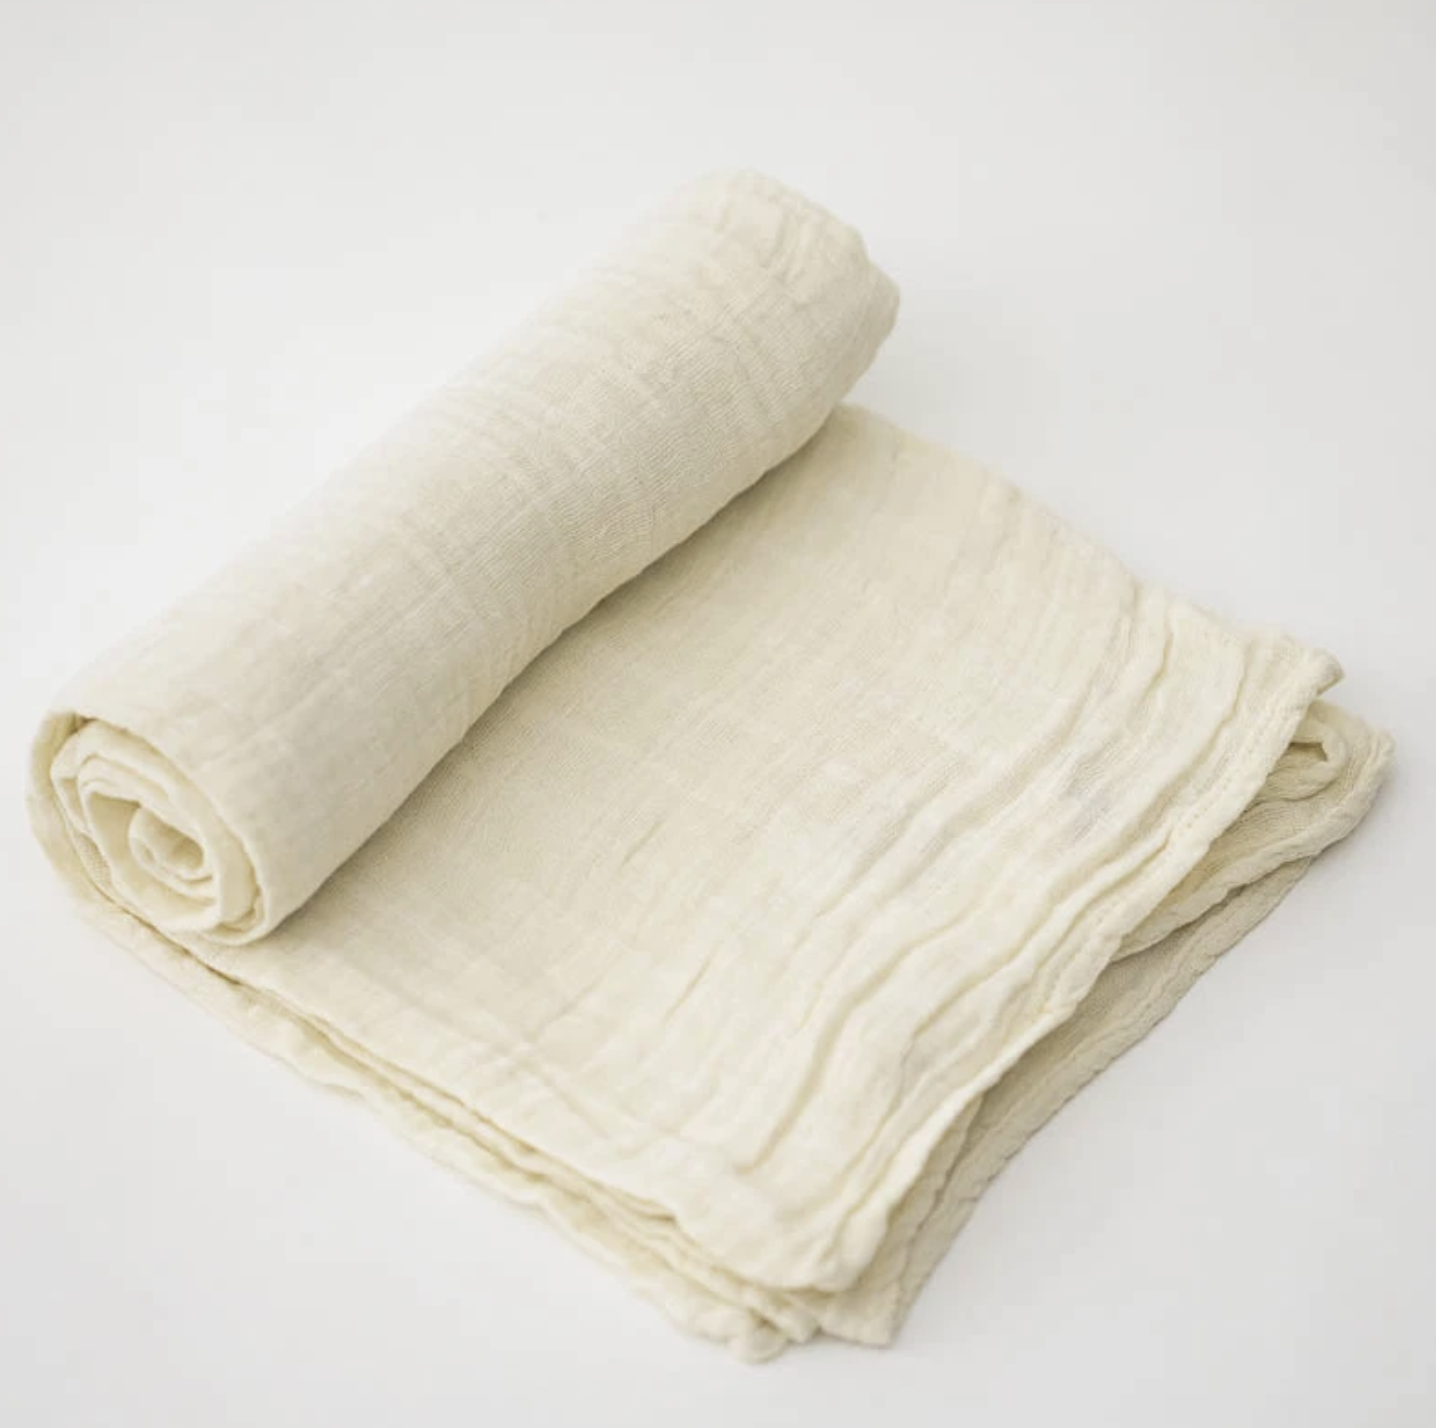 Muslin Swaddle Blanket - Linen